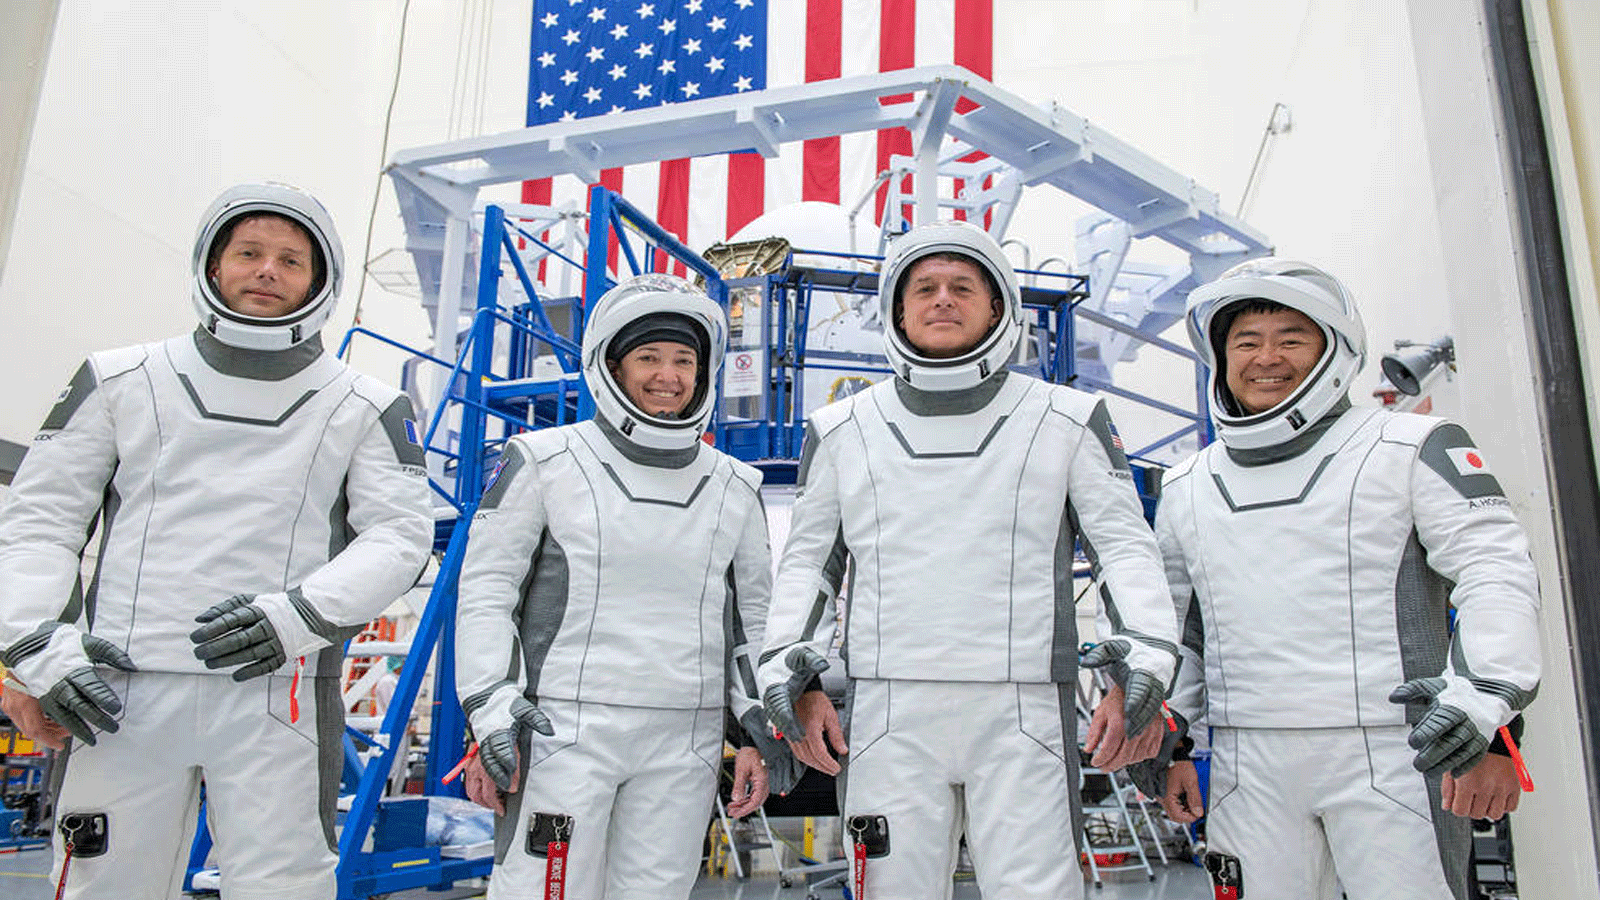 طاقم المهمة الثانية طويلة الأمد من SpaceX Crew Dragon إلى محطة الفضاء الدولية ، SpaceX Crew-2 التابعة لناسا ، خلال جلسة تدريبية في منشأة تدريب SpaceX في هوثورن ، كاليفورنيا.(الصورة: SpaceX)